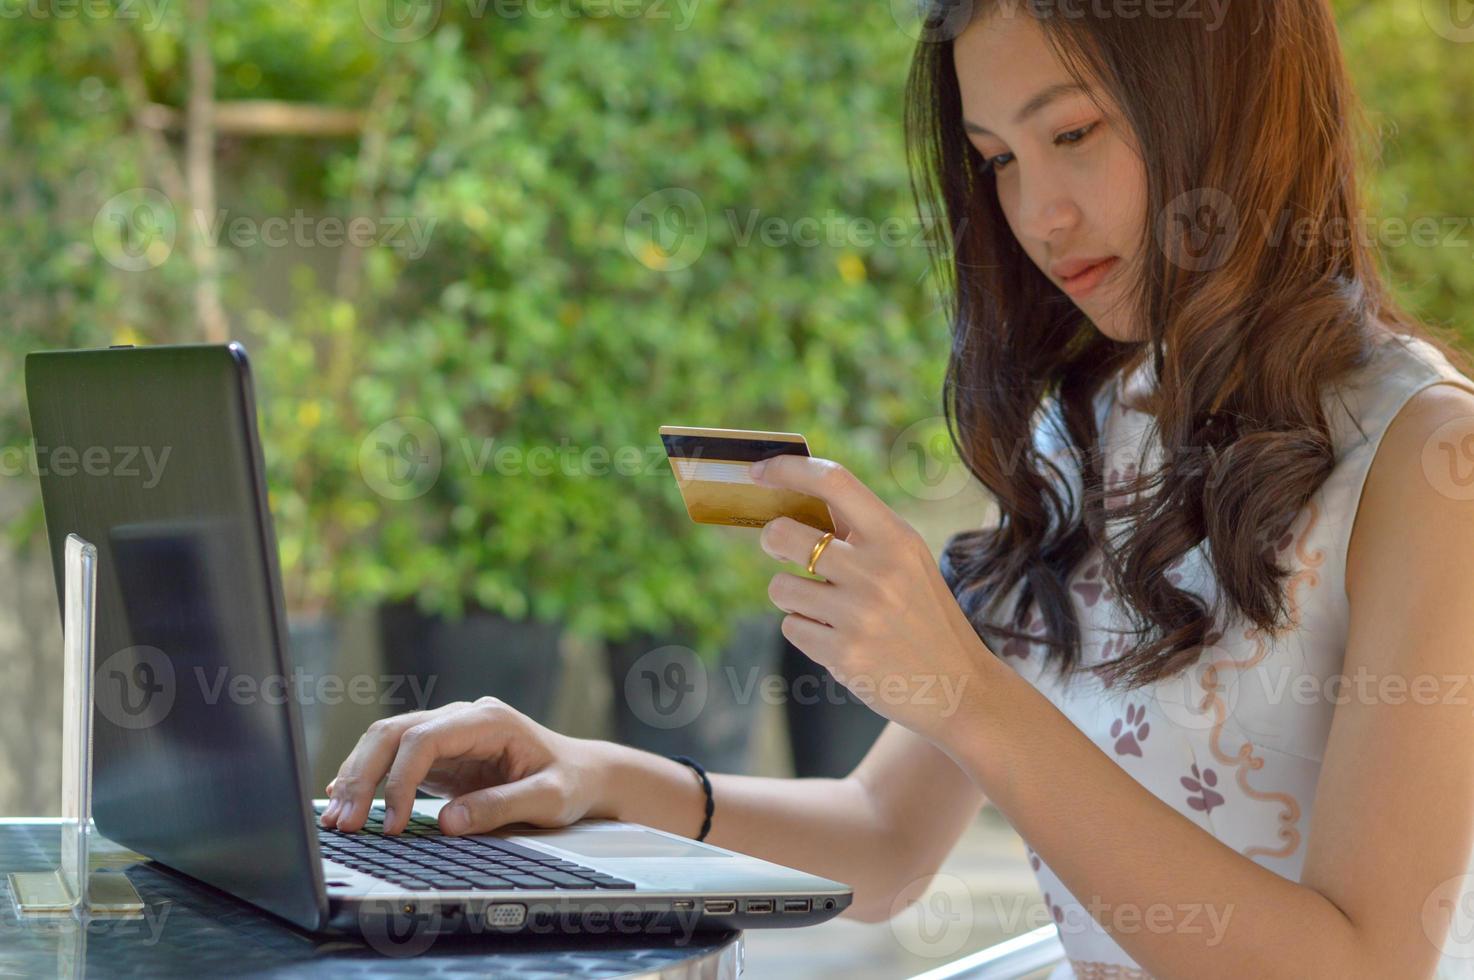 asiatisches Mädchen, das Kreditkarte hält und Laptop verwendet foto